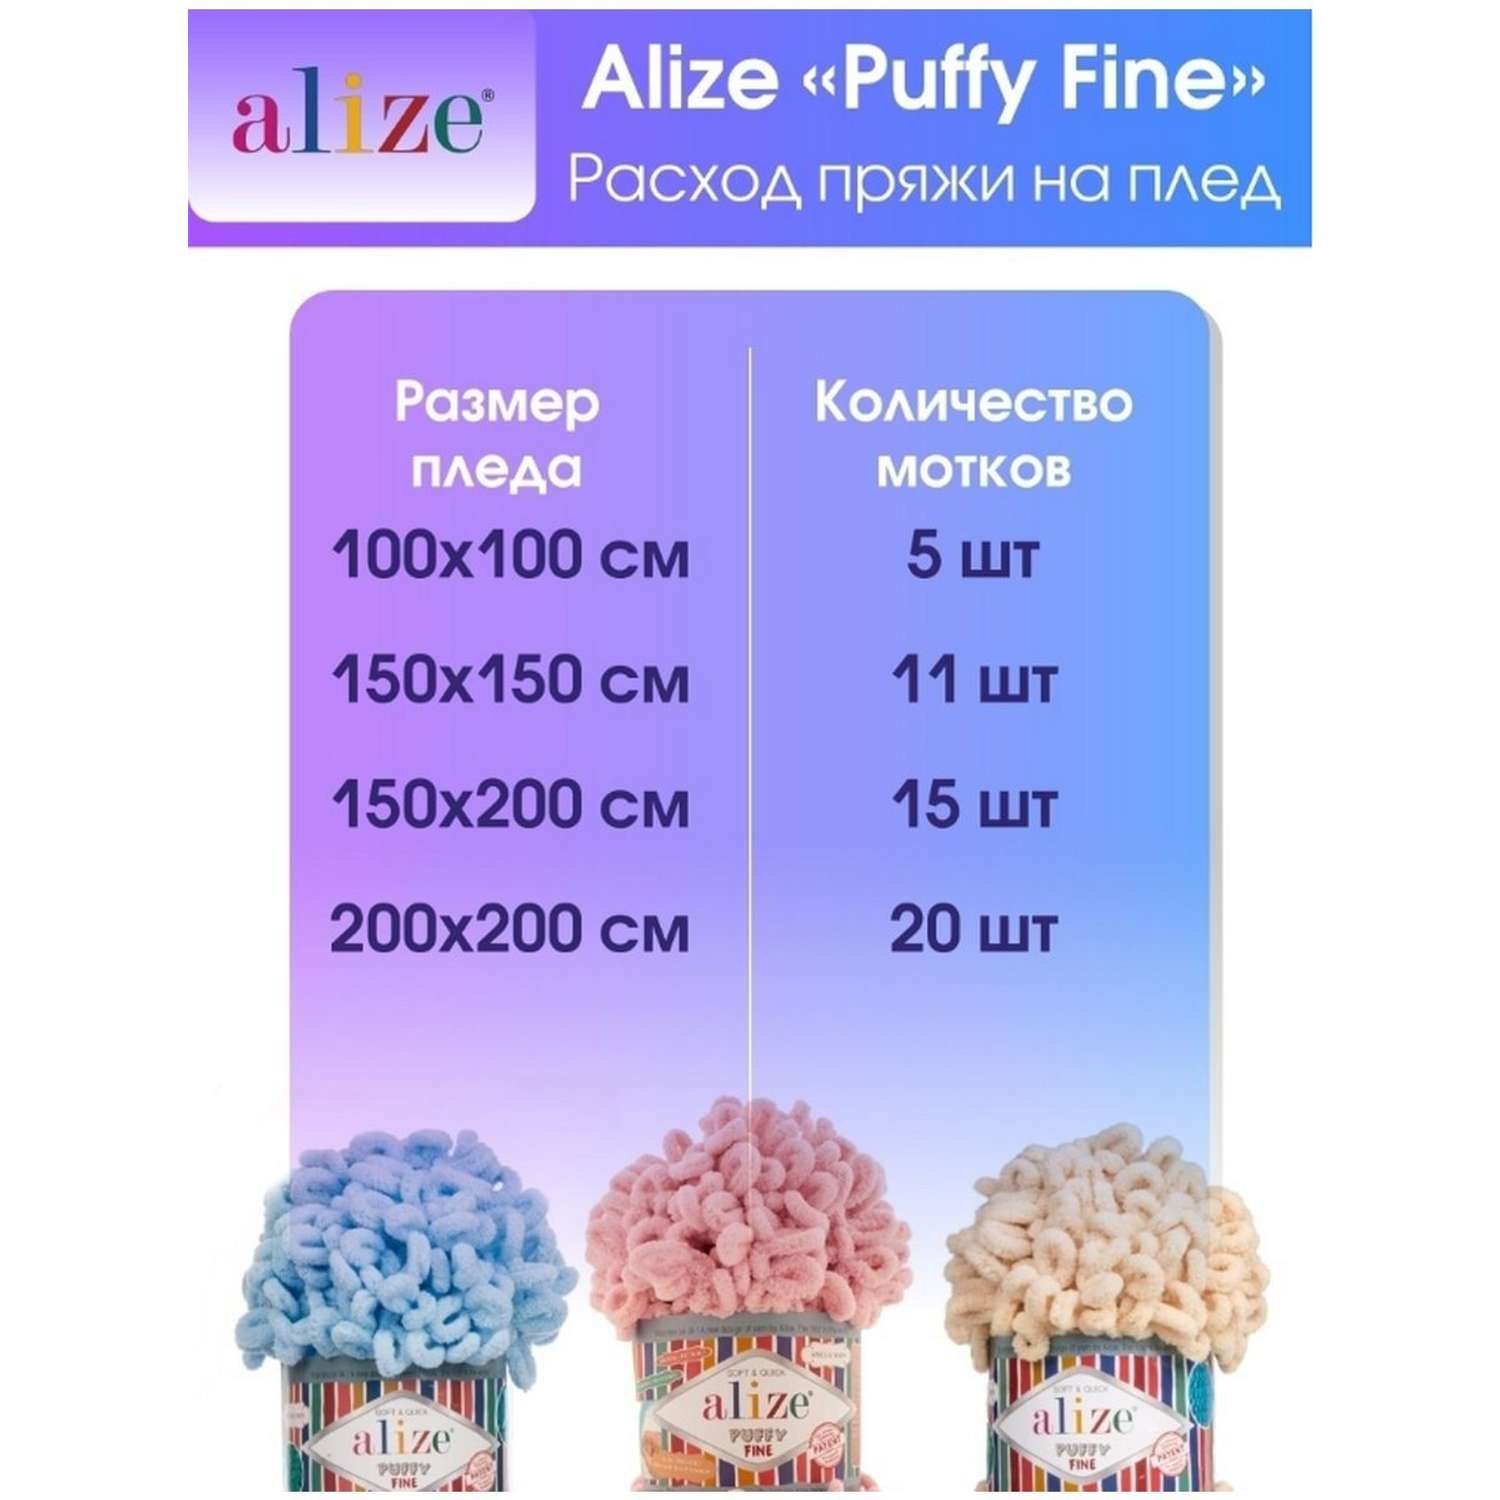 Пряжа для вязания Alize puffy fine 100 г 14.5 м микрополиэстер фантазийная мягкая 268 голубь 5 мотков - фото 7